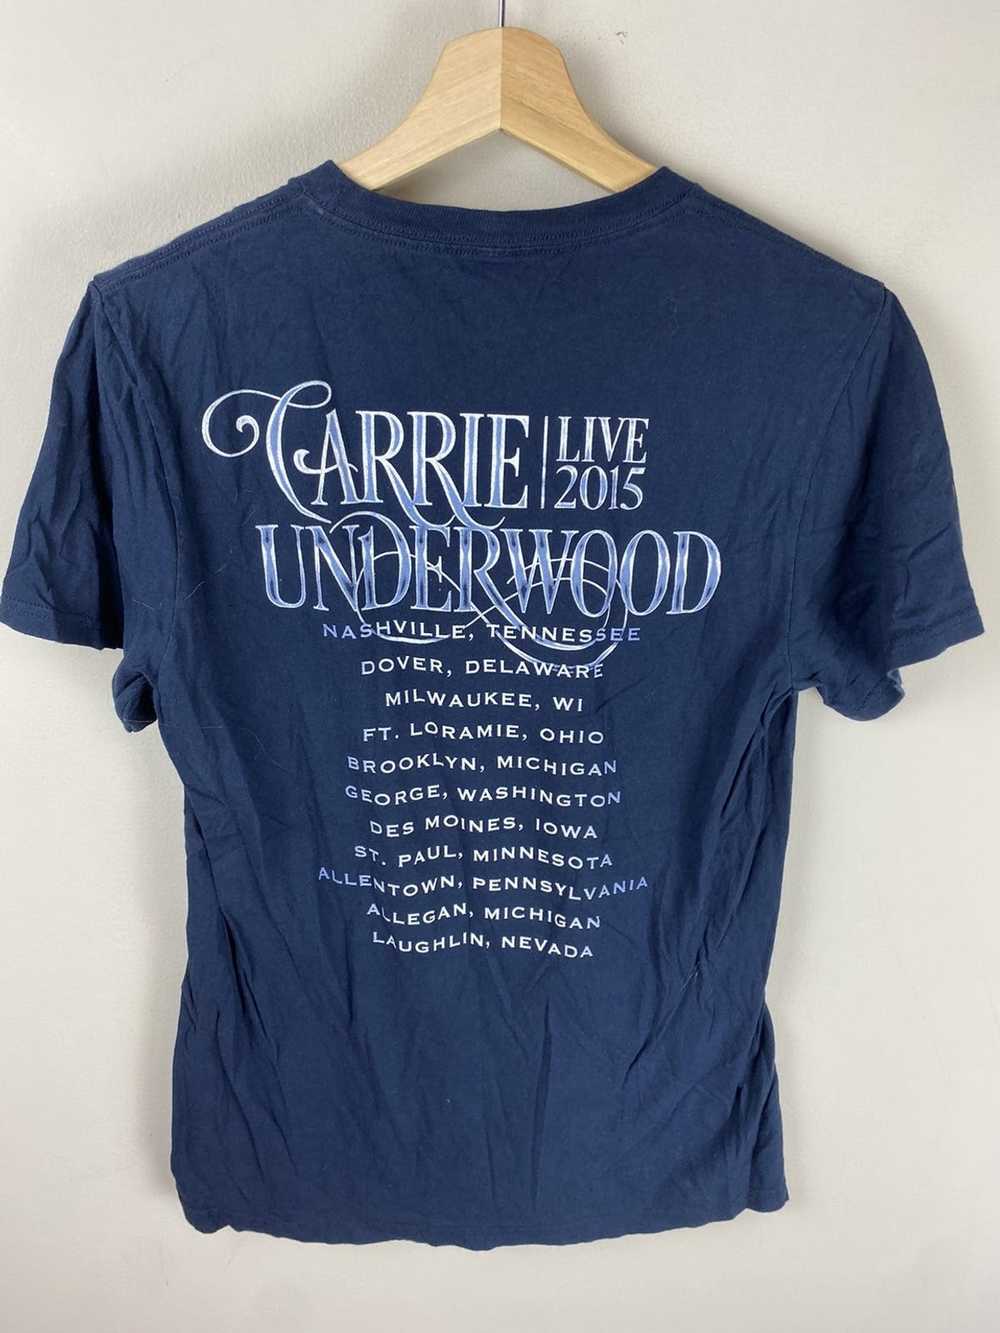 Vintage Vintage Carrie Underwood Band Tee - image 3